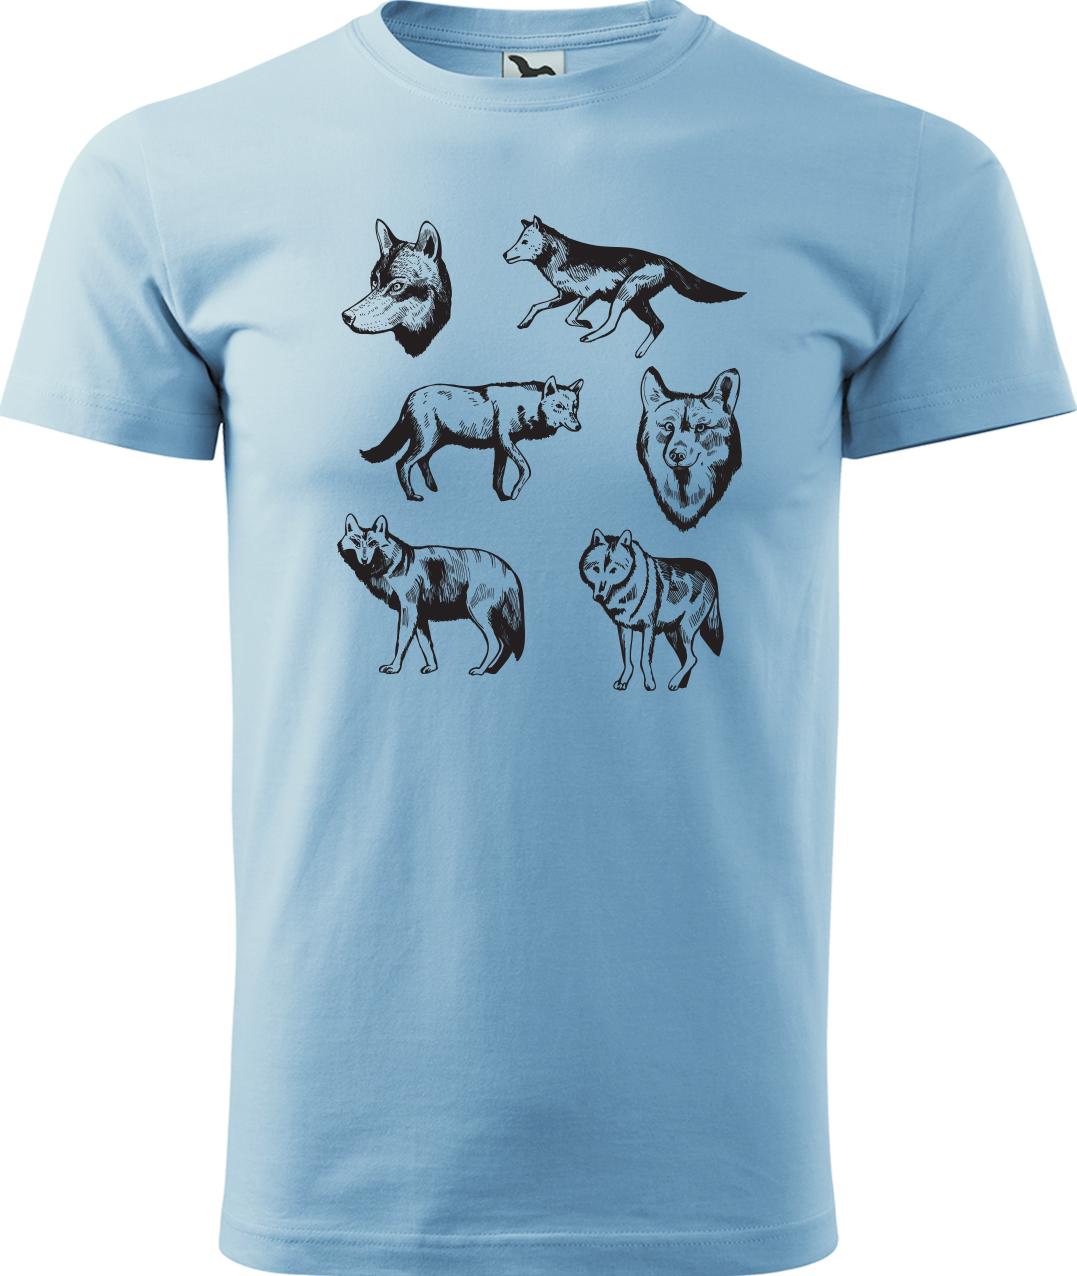 Pánské tričko s vlkem - Vlci Velikost: L, Barva: Nebesky modrá (15), Střih: pánský